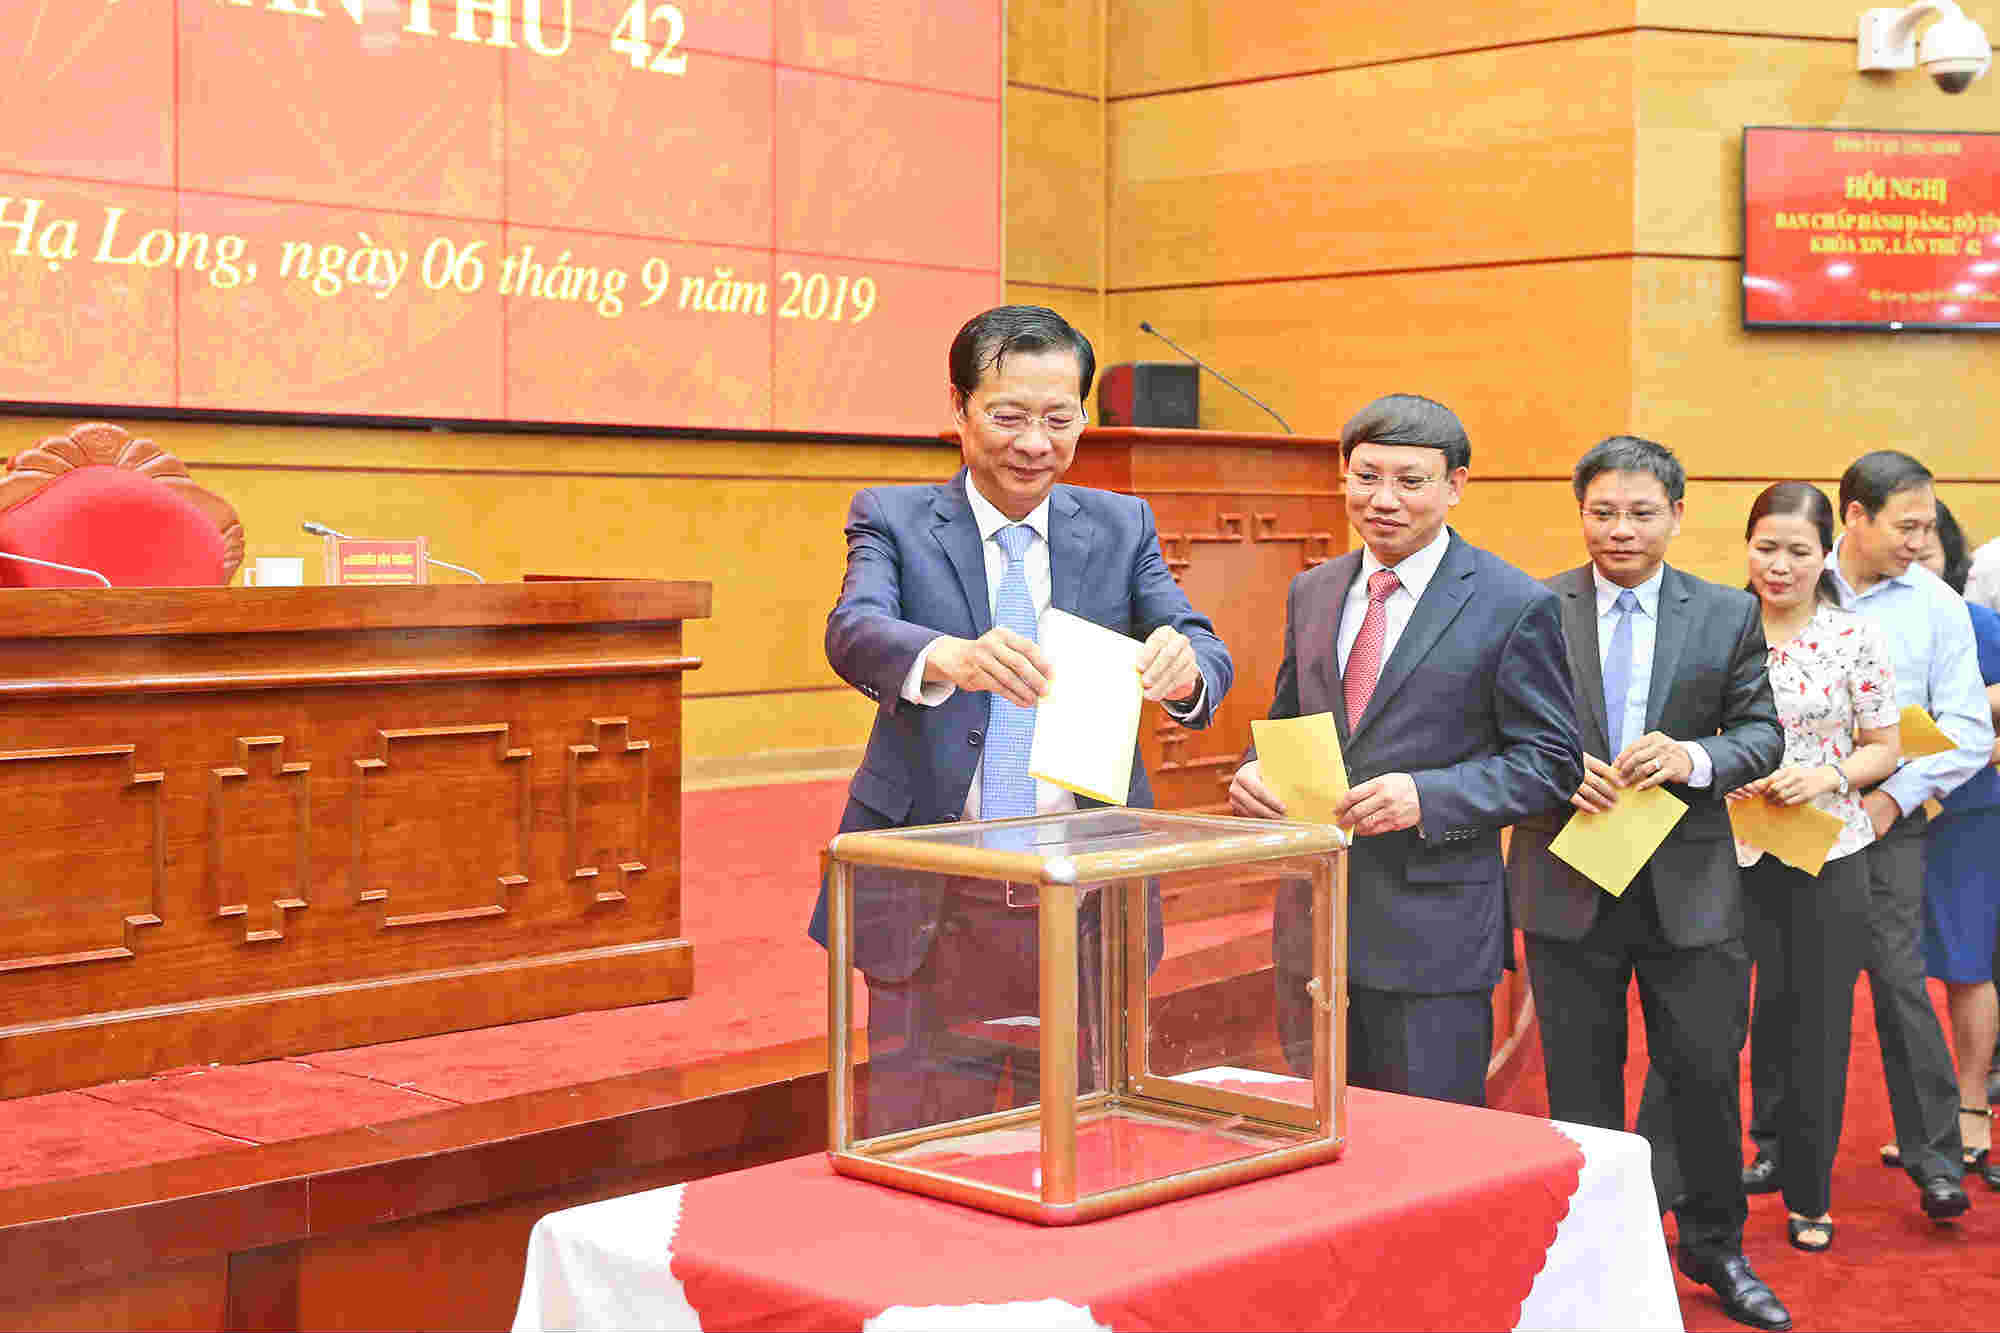 Các đồng chí Ủy viên Ban Chấp hành Đảng bộ tỉnh bỏ phiếu bầu Bí thư Tỉnh ủy Quảng Ninh khóa XIV, nhiệm kỳ 2015-2020. Ảnh: Hùng Sơn.